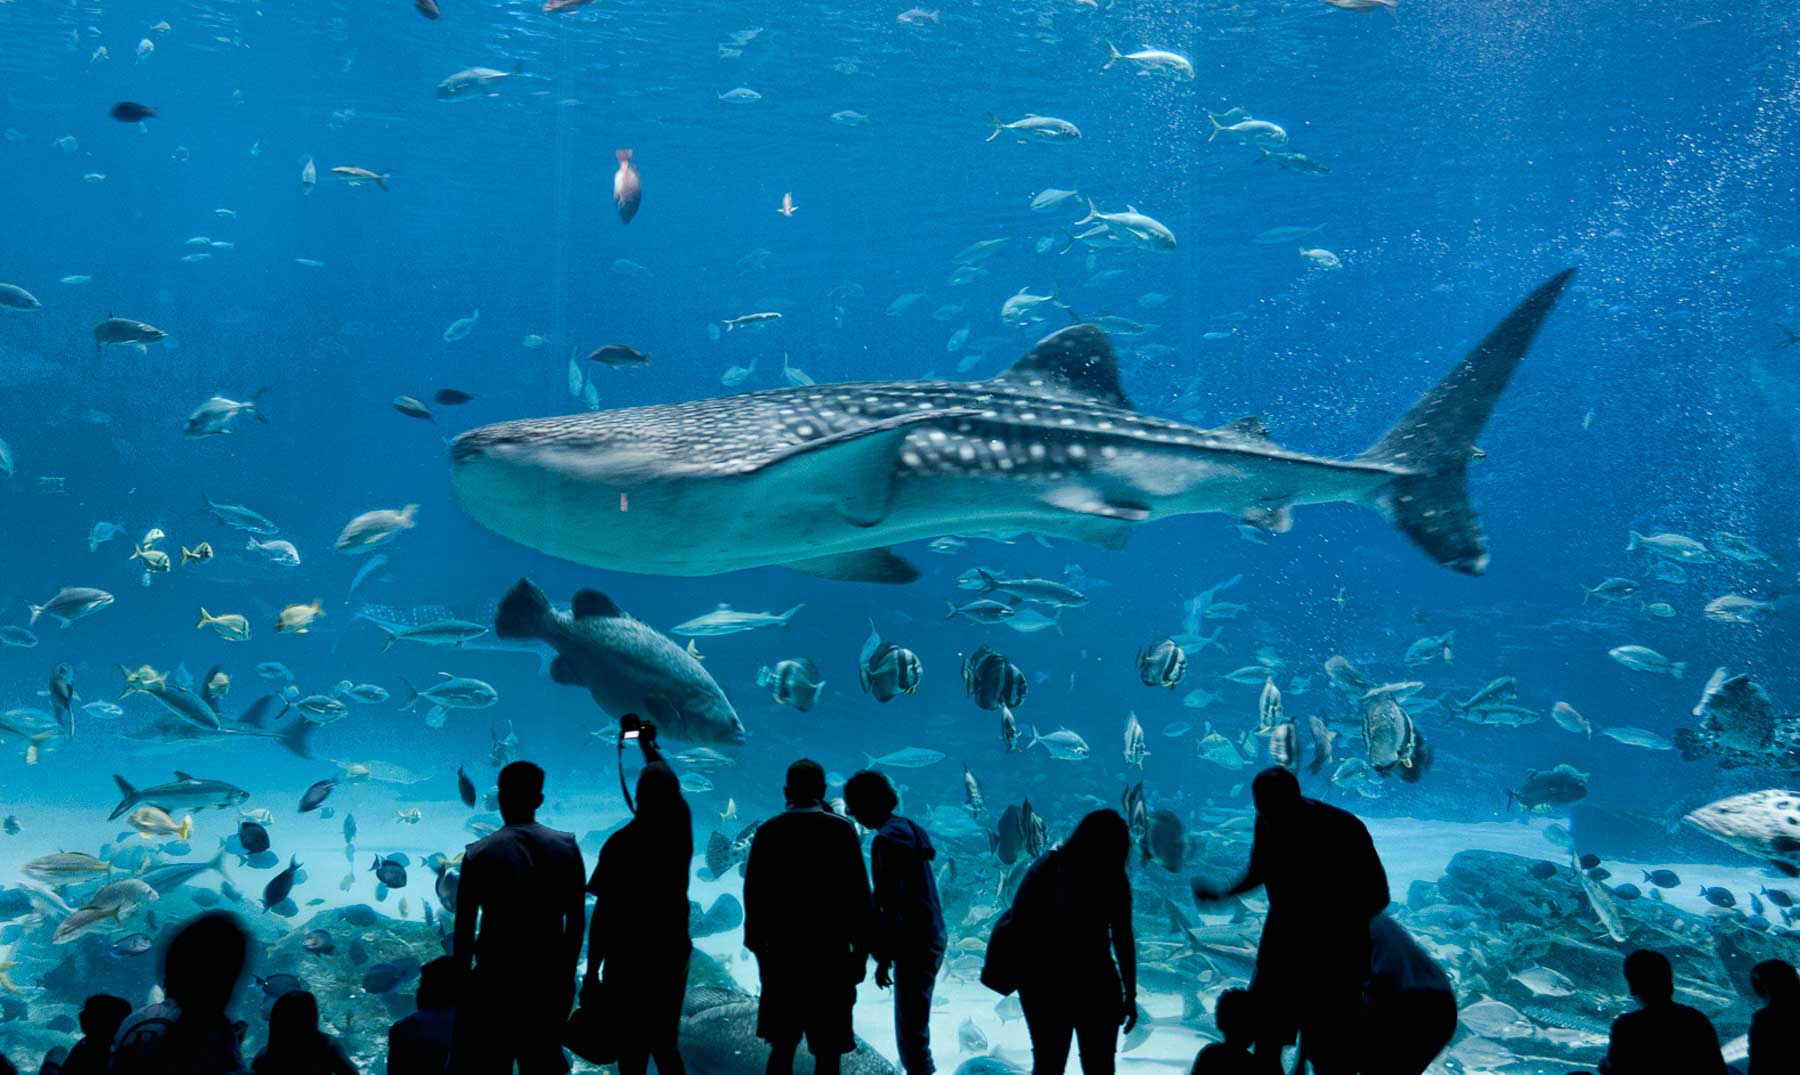 El mayor acuario del mundo. Impresionante.